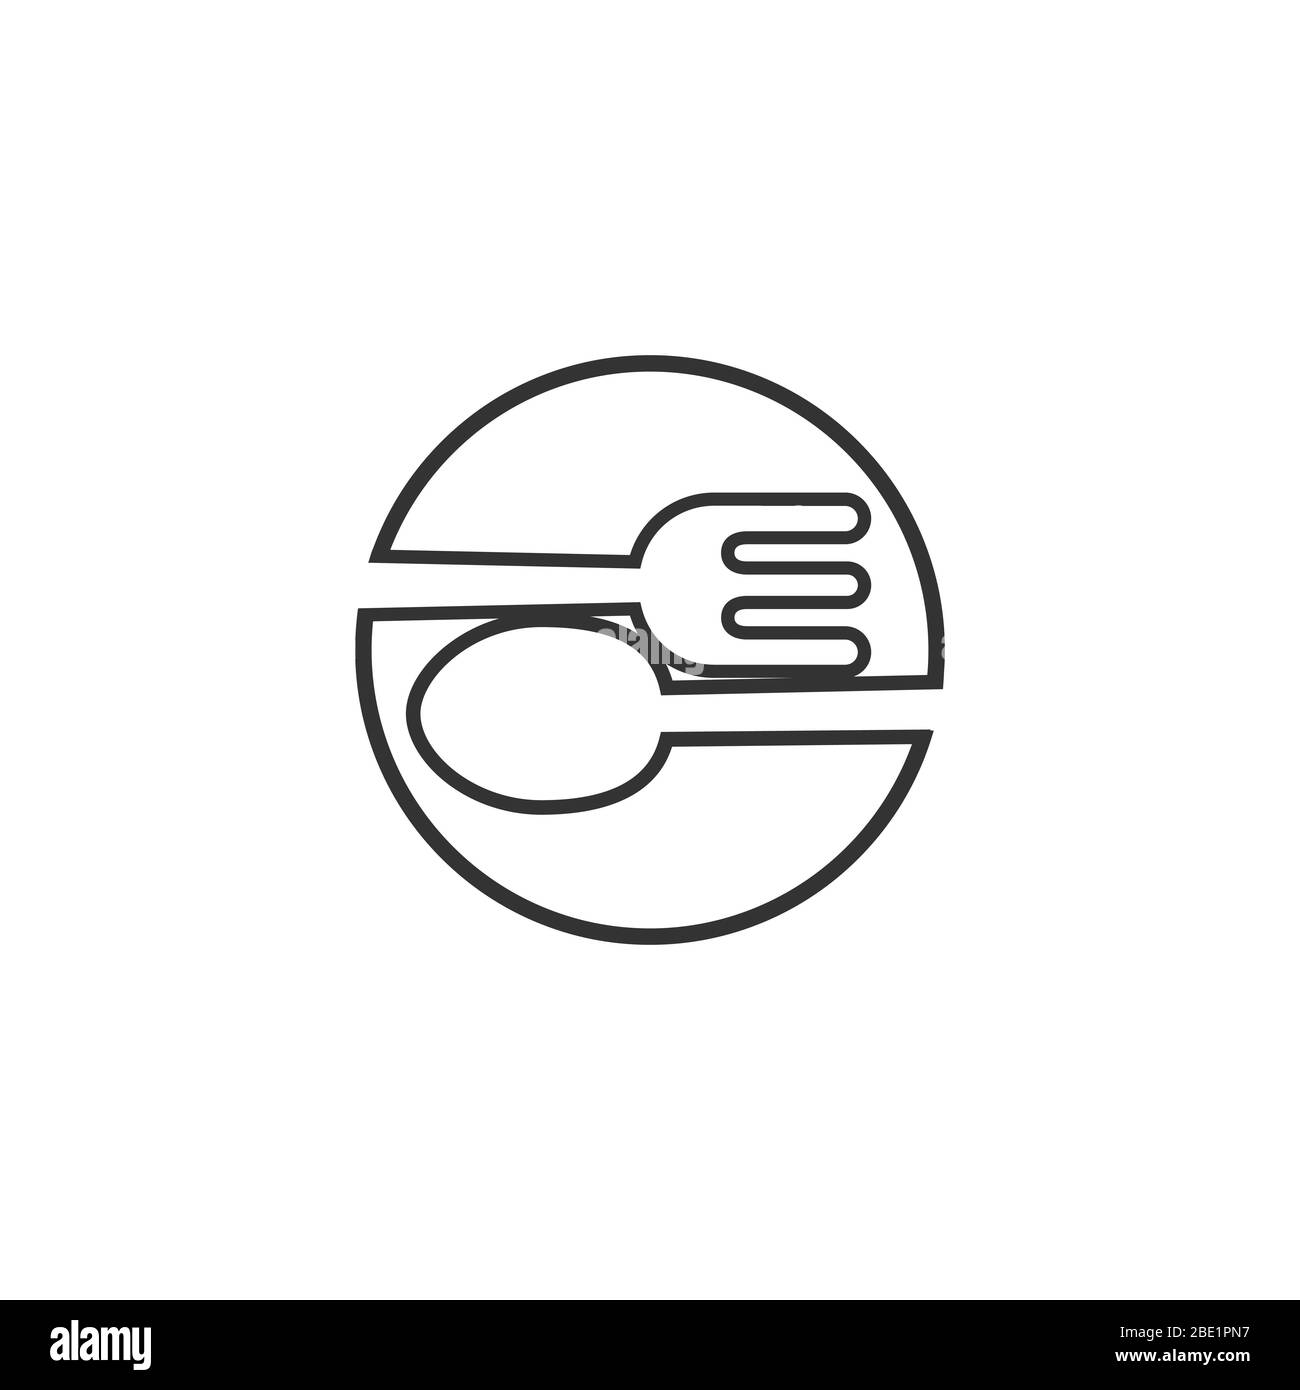 Grafik-Lebensmittel-Symbol Symbol für das Kochen Geschäft Vektor-Logo Illustration Stock Vektor